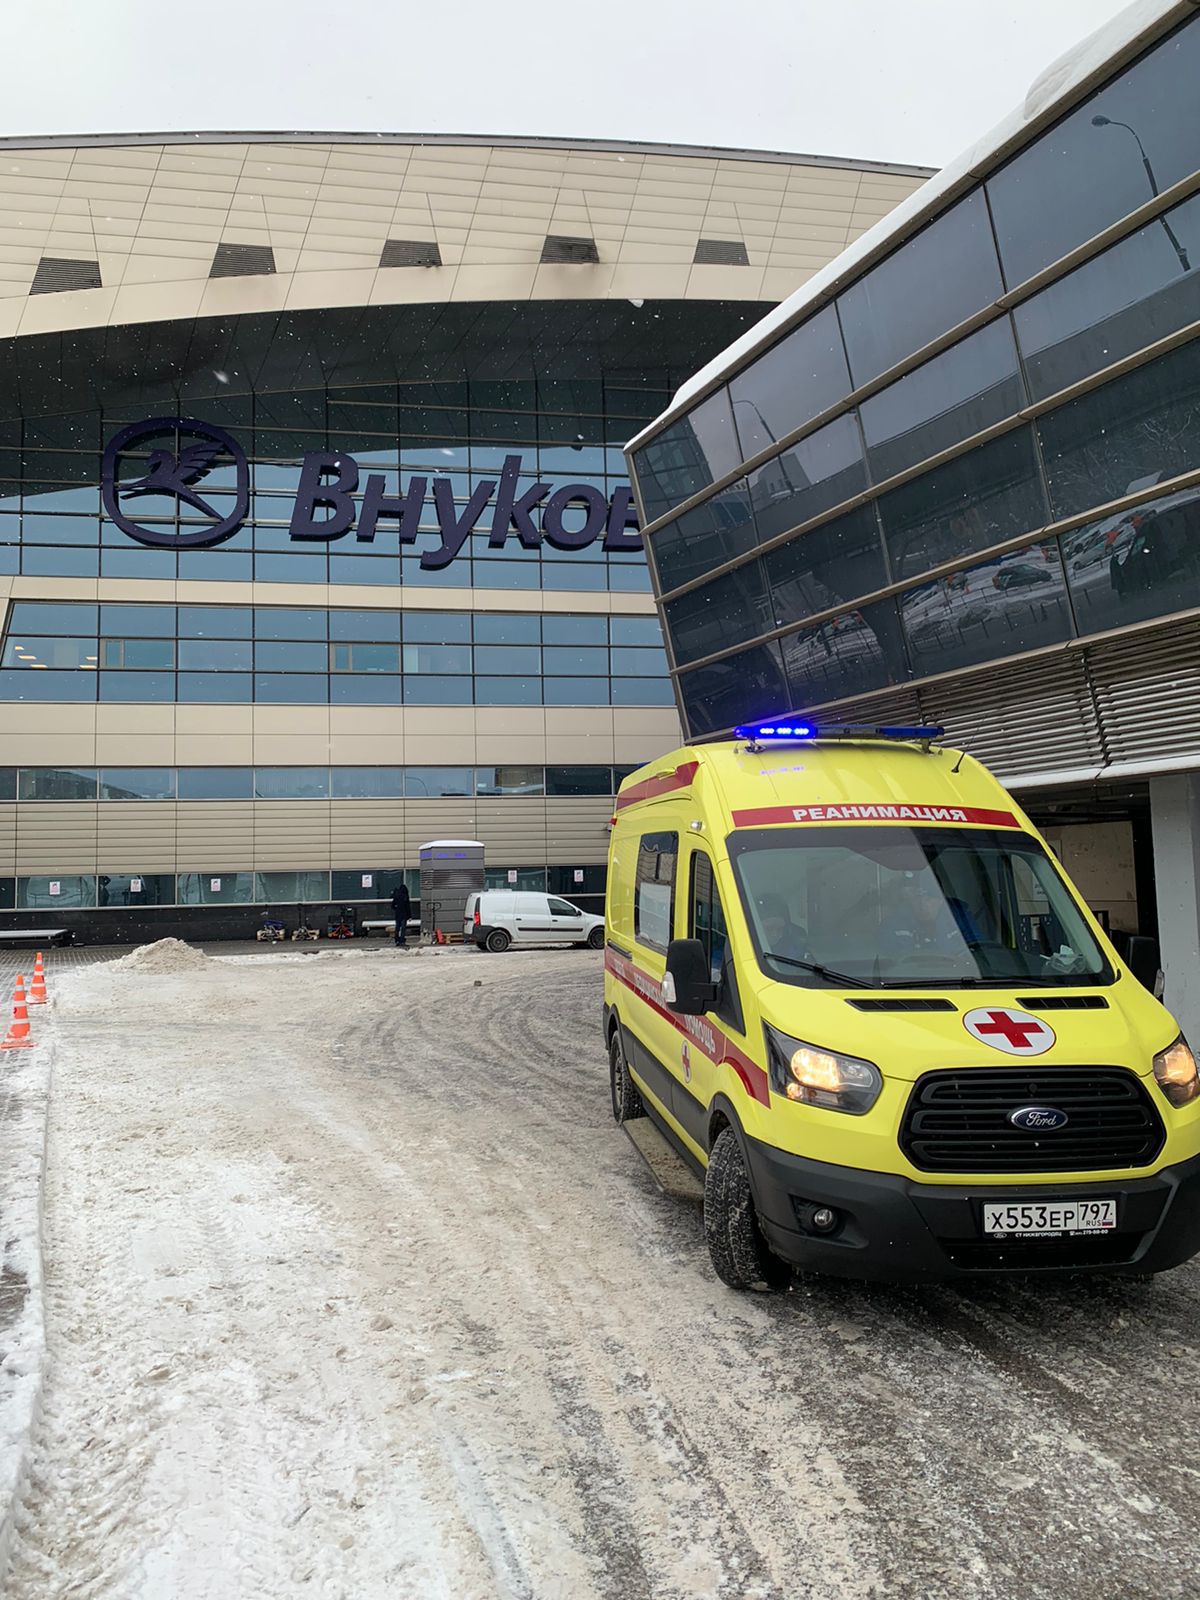 Встреча пациента в аэропорту Внуково для дальнейшей транспортировки в центр реабилитации.